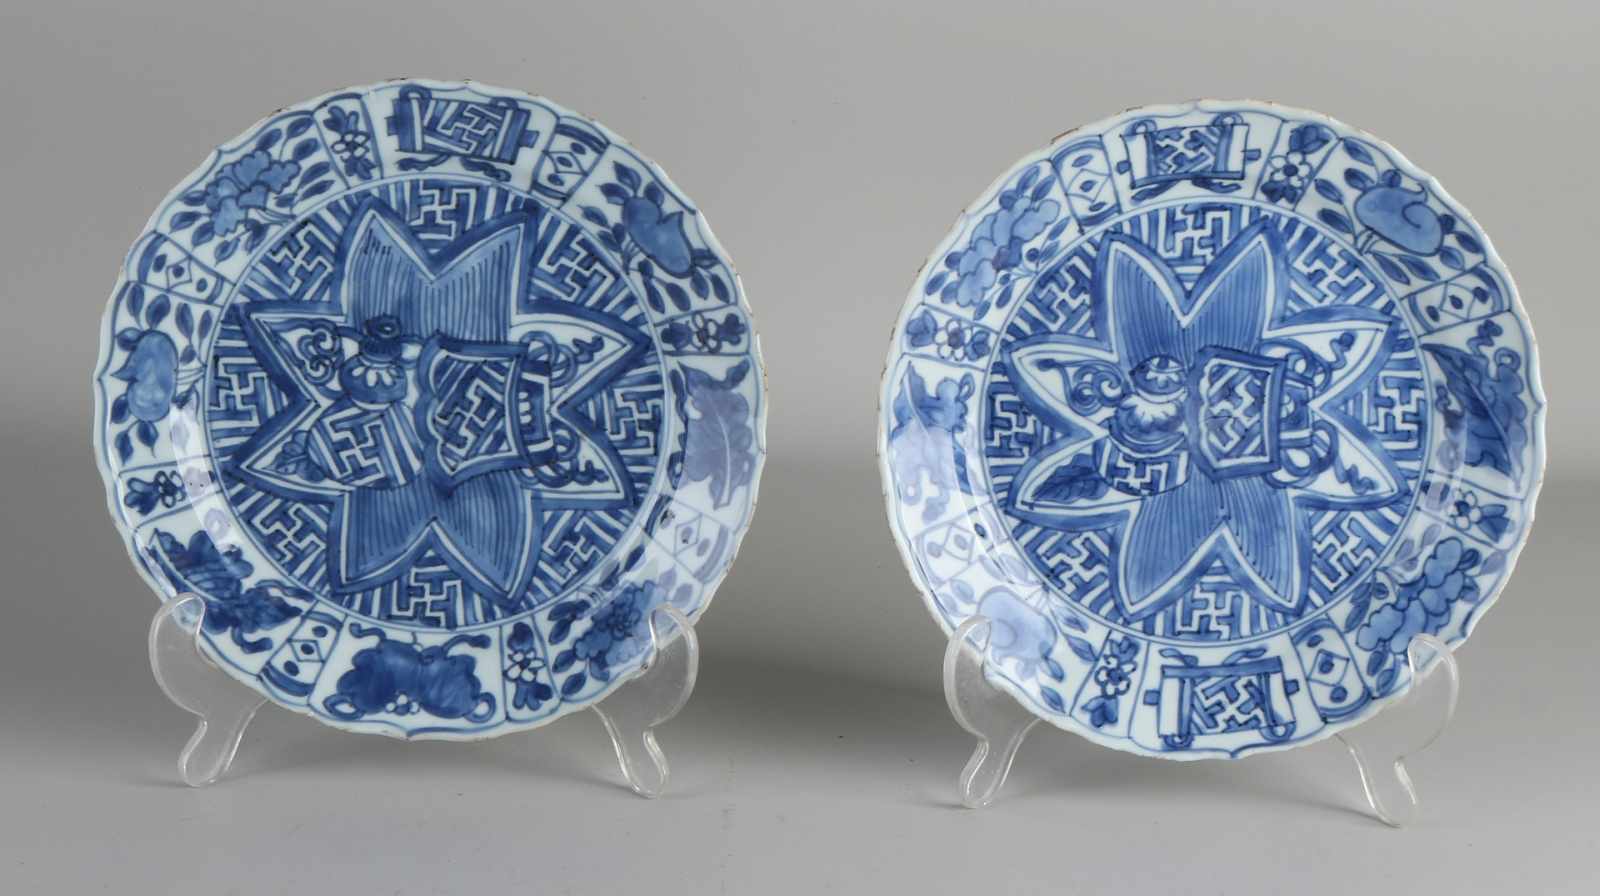 Zwei antike chinesische Porzellanteller mit Blumendekor. Mit umrandetem Rand. Einige Chips.